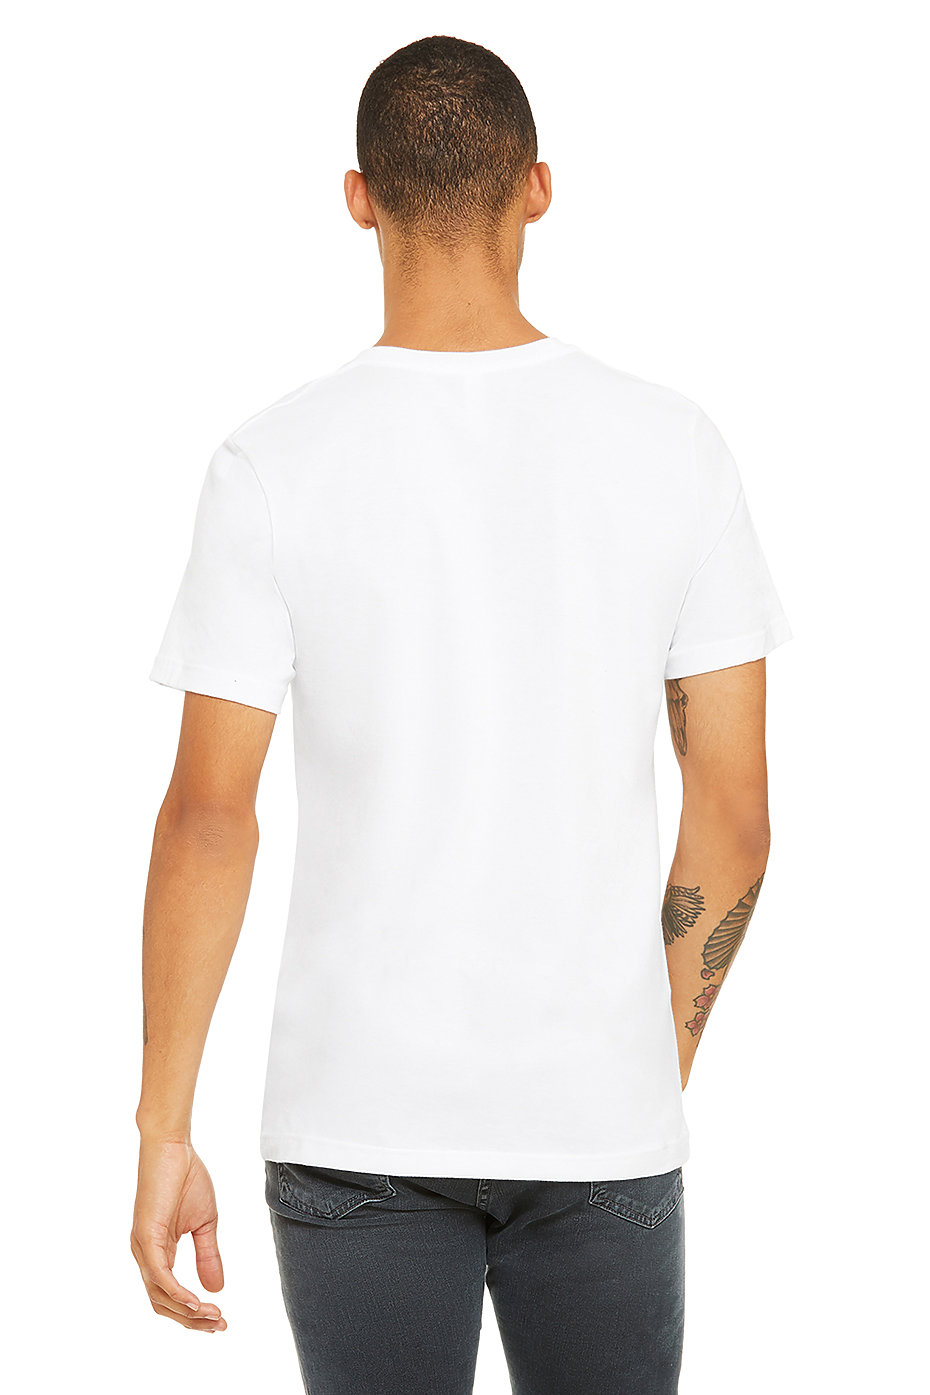 Bella Canvas Mens Jersey Short-Sleeve T-Shirt